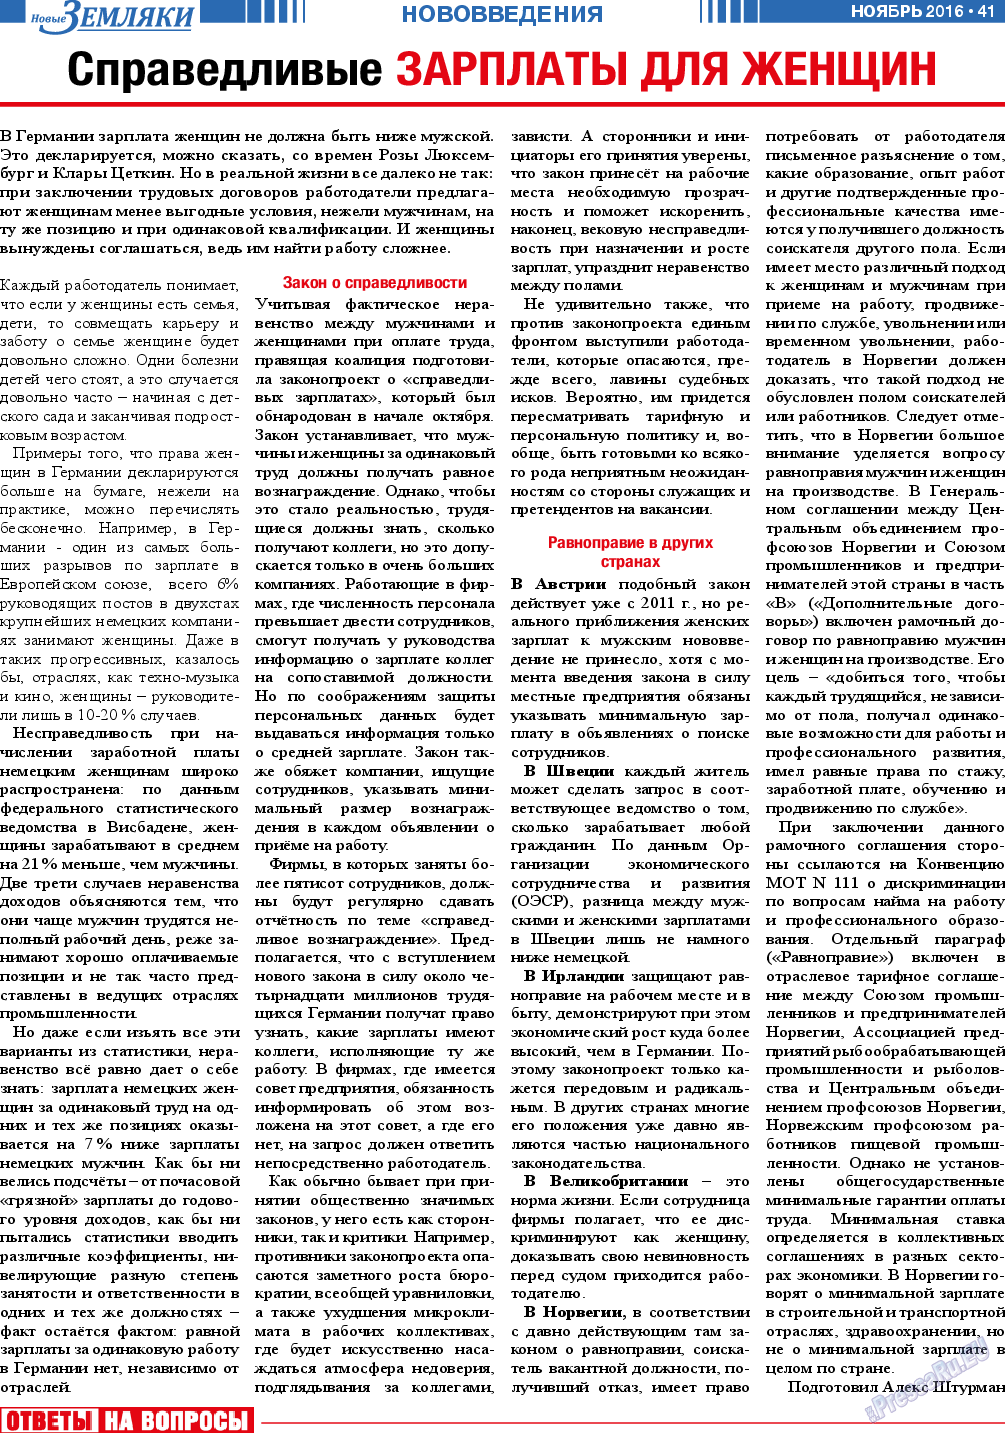 Новые Земляки, газета. 2016 №11 стр.41